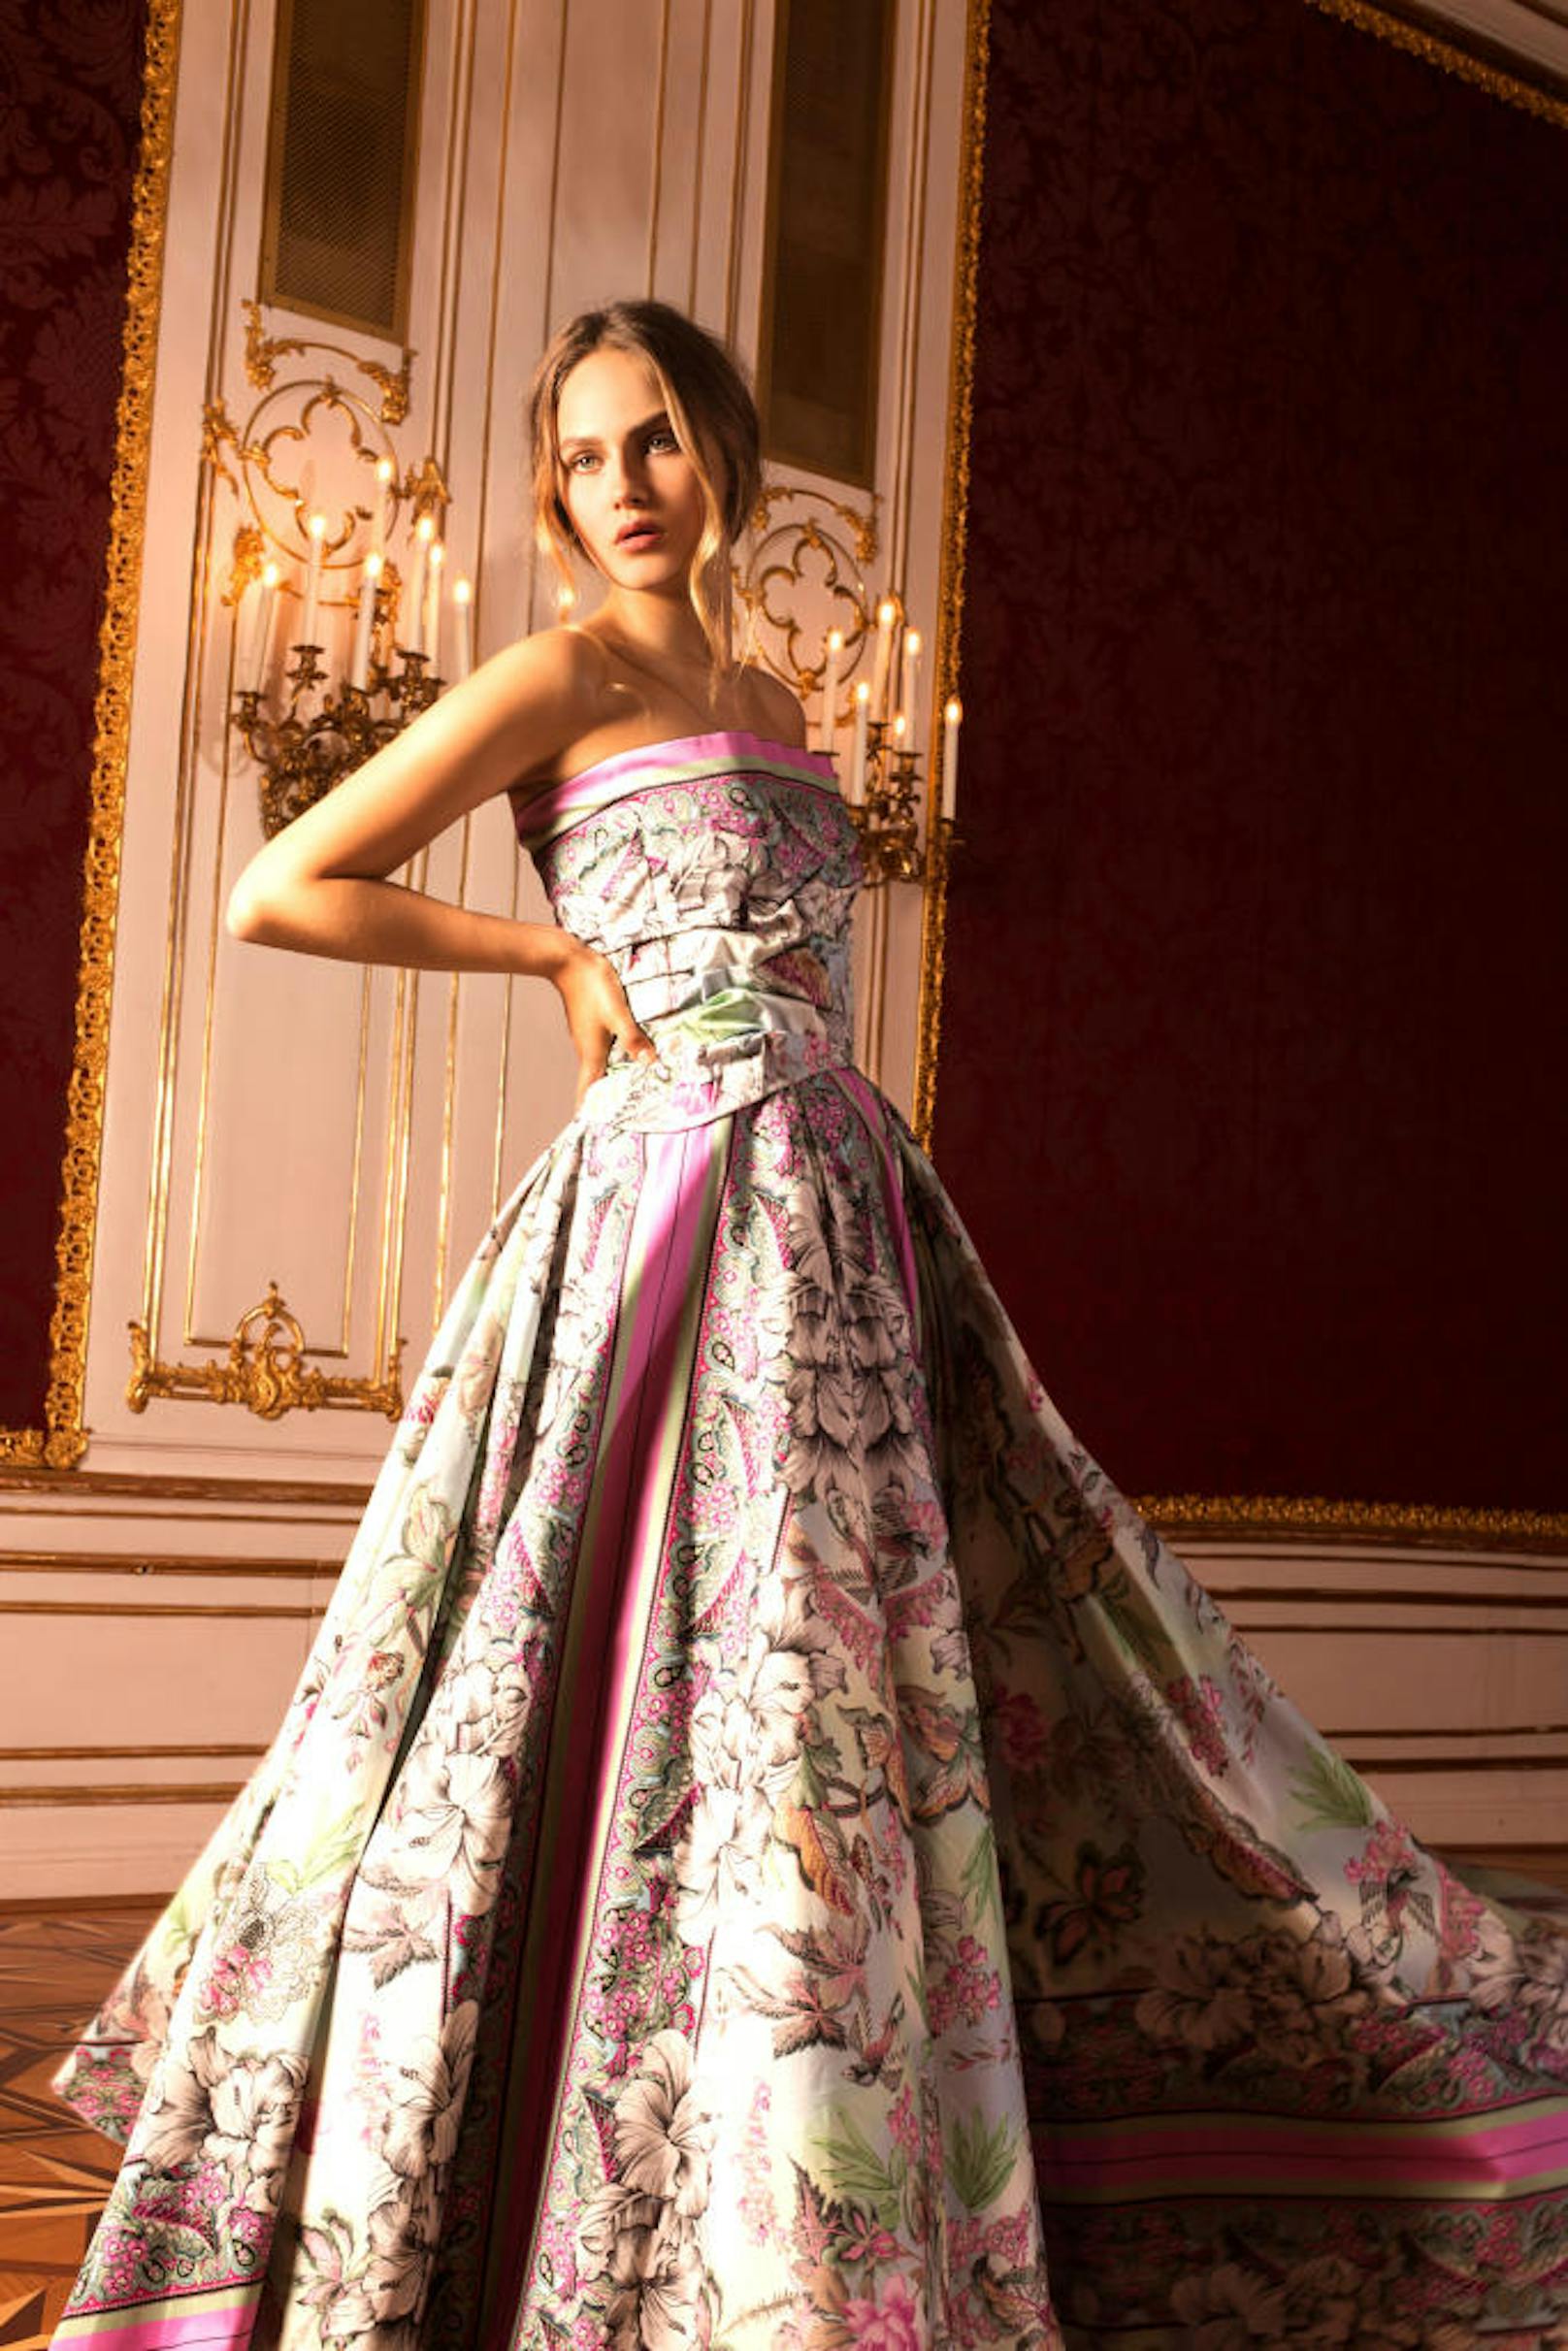 Das trägt die Dame am Silvesterball in der Hofburg: Bodenlange Kleider in Rose, Lavendel und Flieder bis hin zu tiefem Violett.